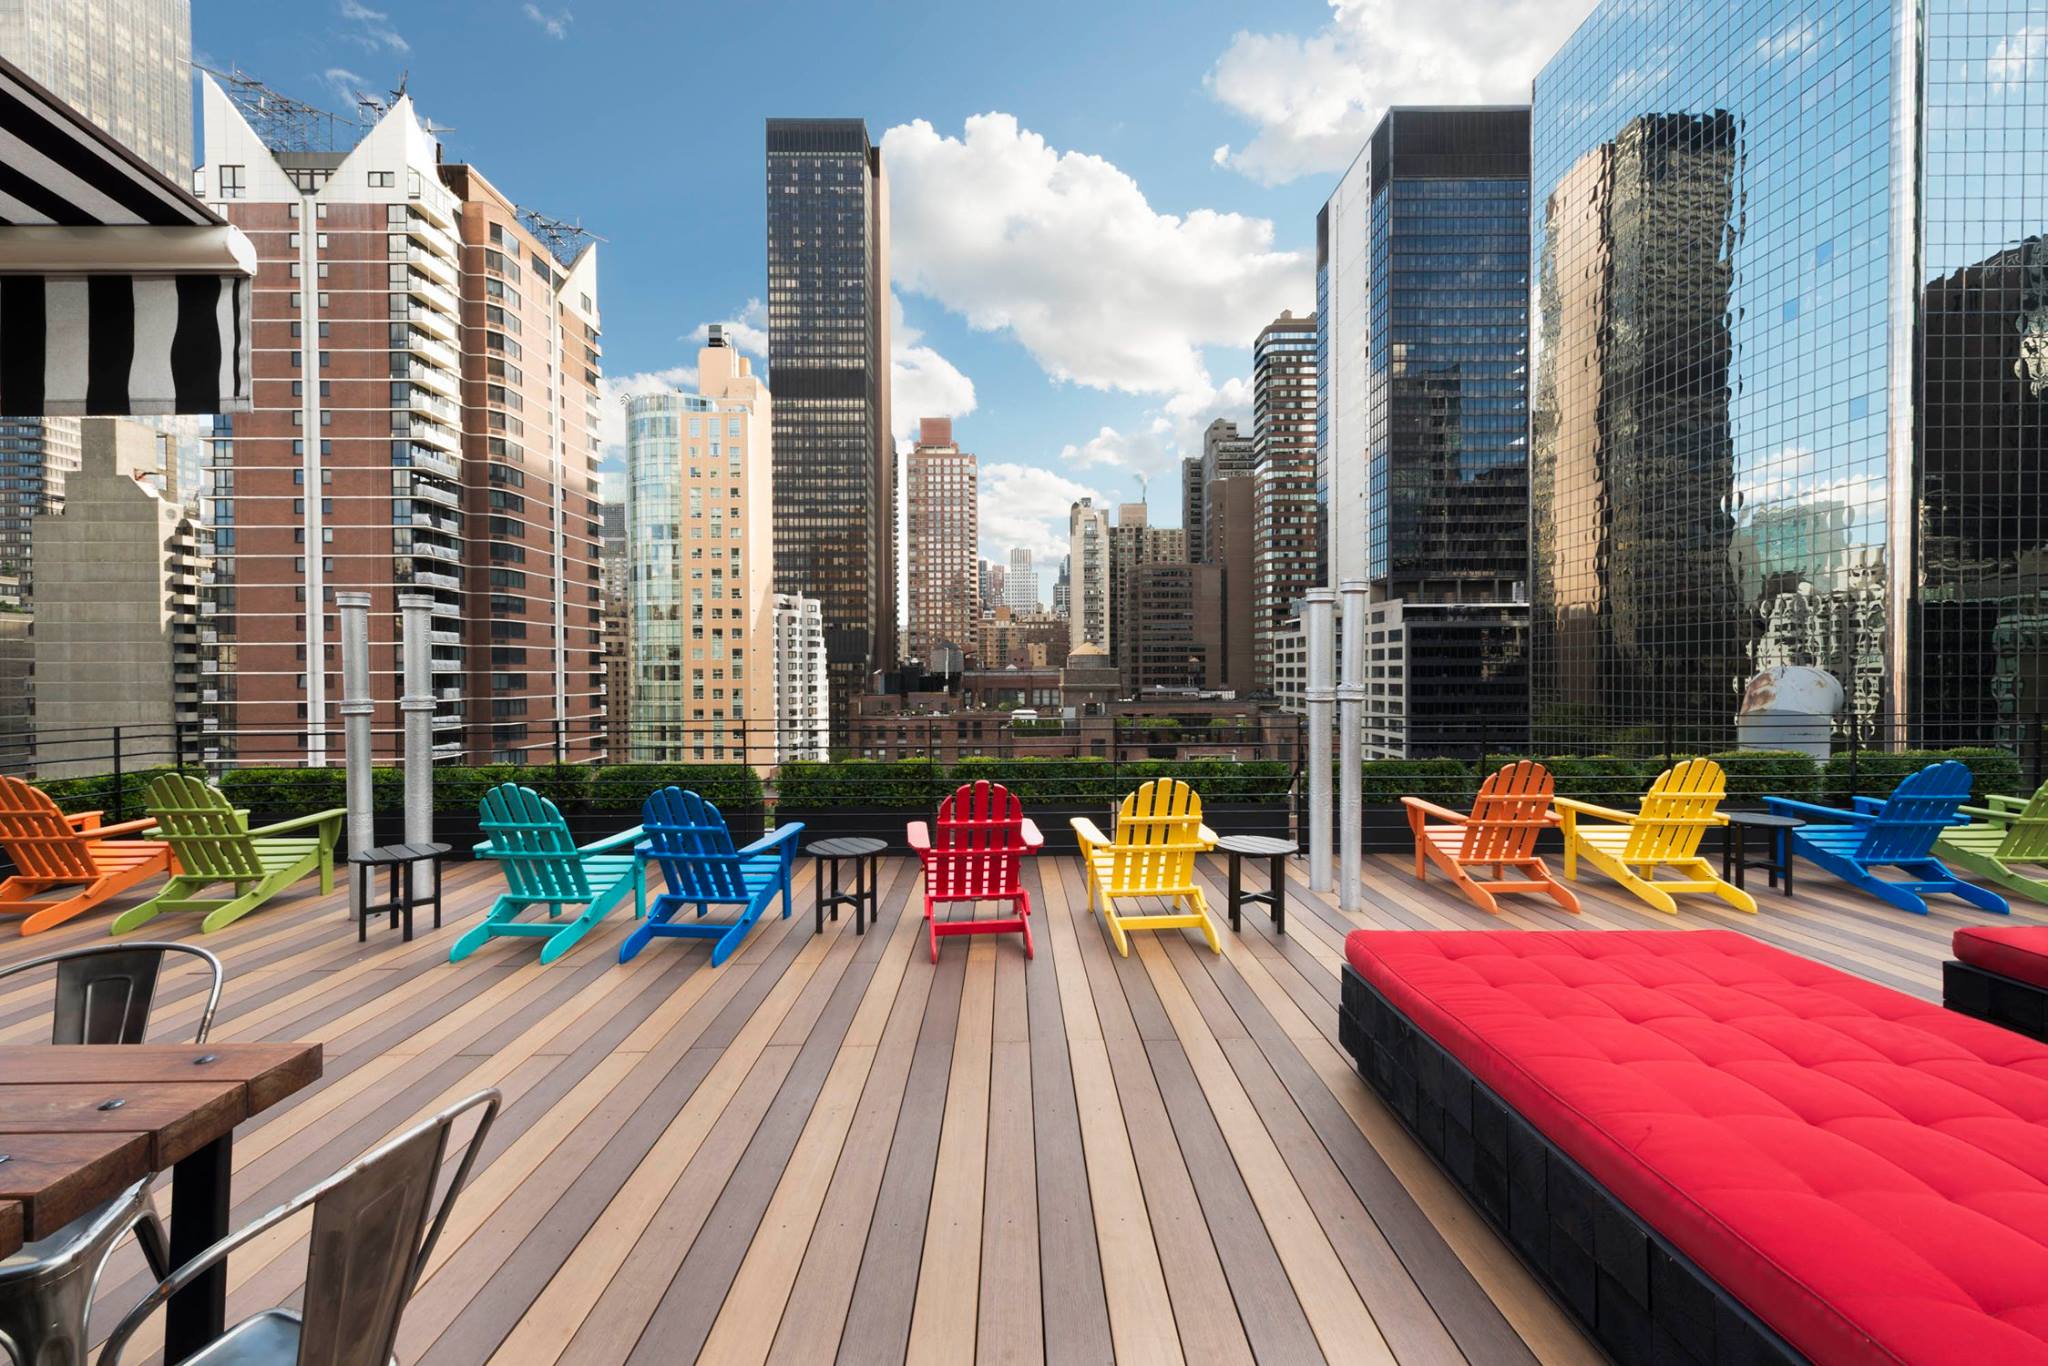 Foto da varandinha no telhado do hotel The Pod 51 em Nova York, com cadeiras coloridas para tomar sol, um sofazinho vermelho e os prédios da cidade ao fundo